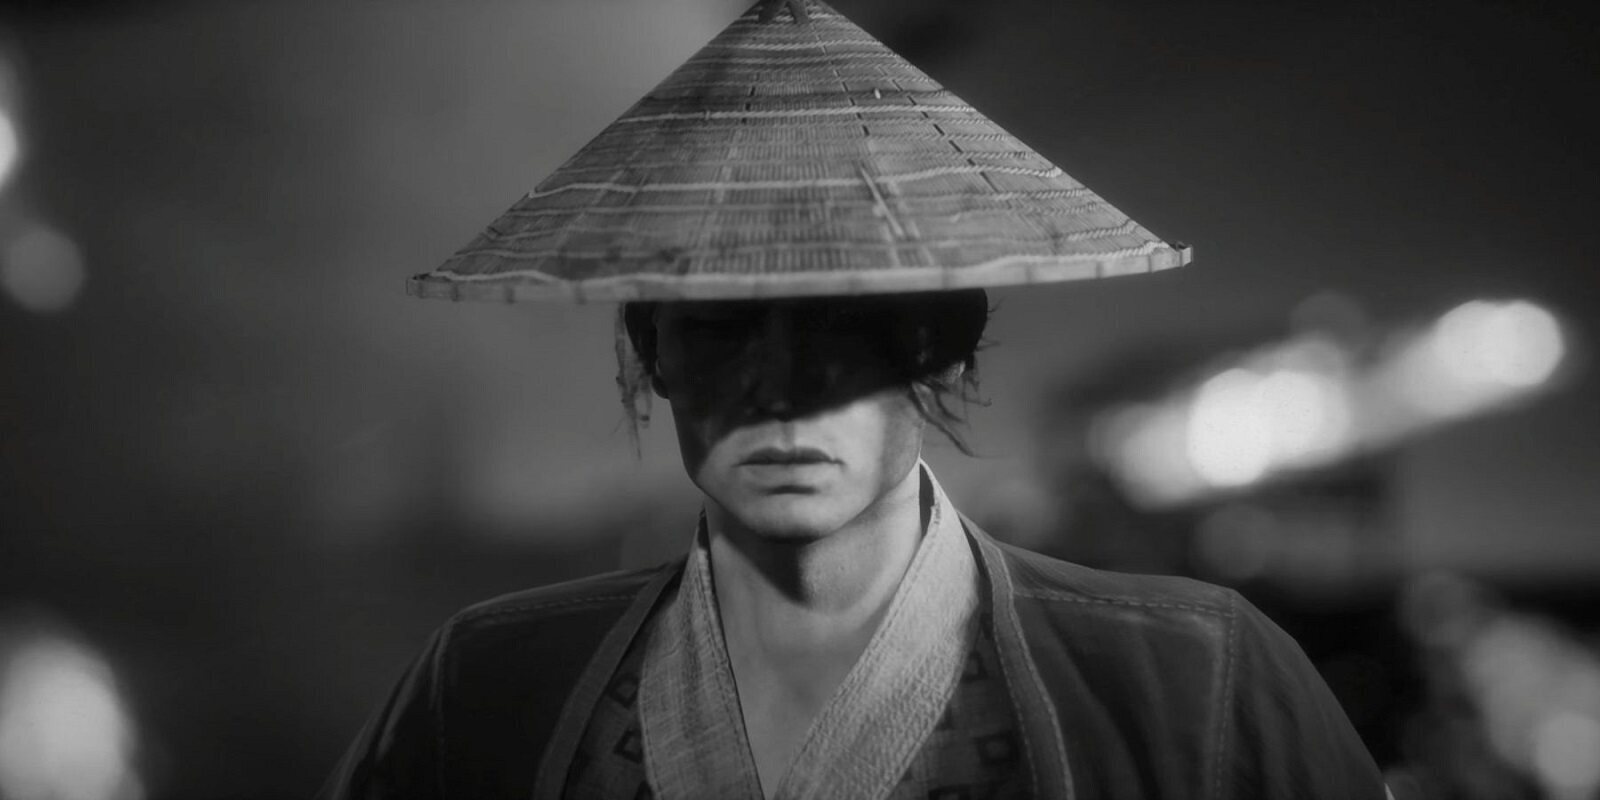 Se filtra la fecha de lanzamiento de 'Trek to Yomi', el nuevo juego de samuráis a lo Akira Kurosawa